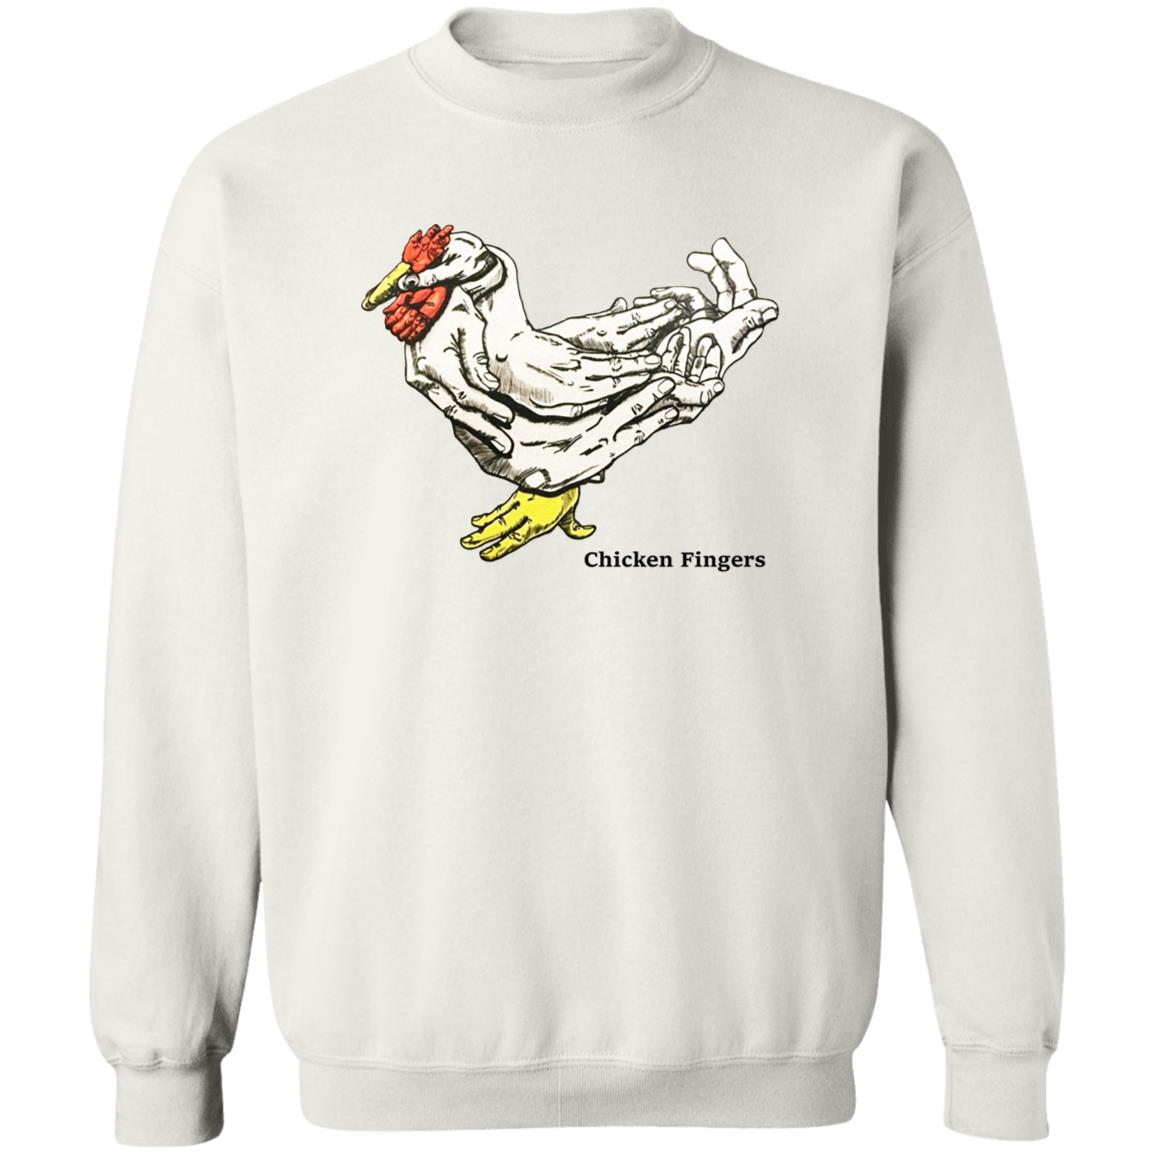 Chicken Fingers Sweatshirt